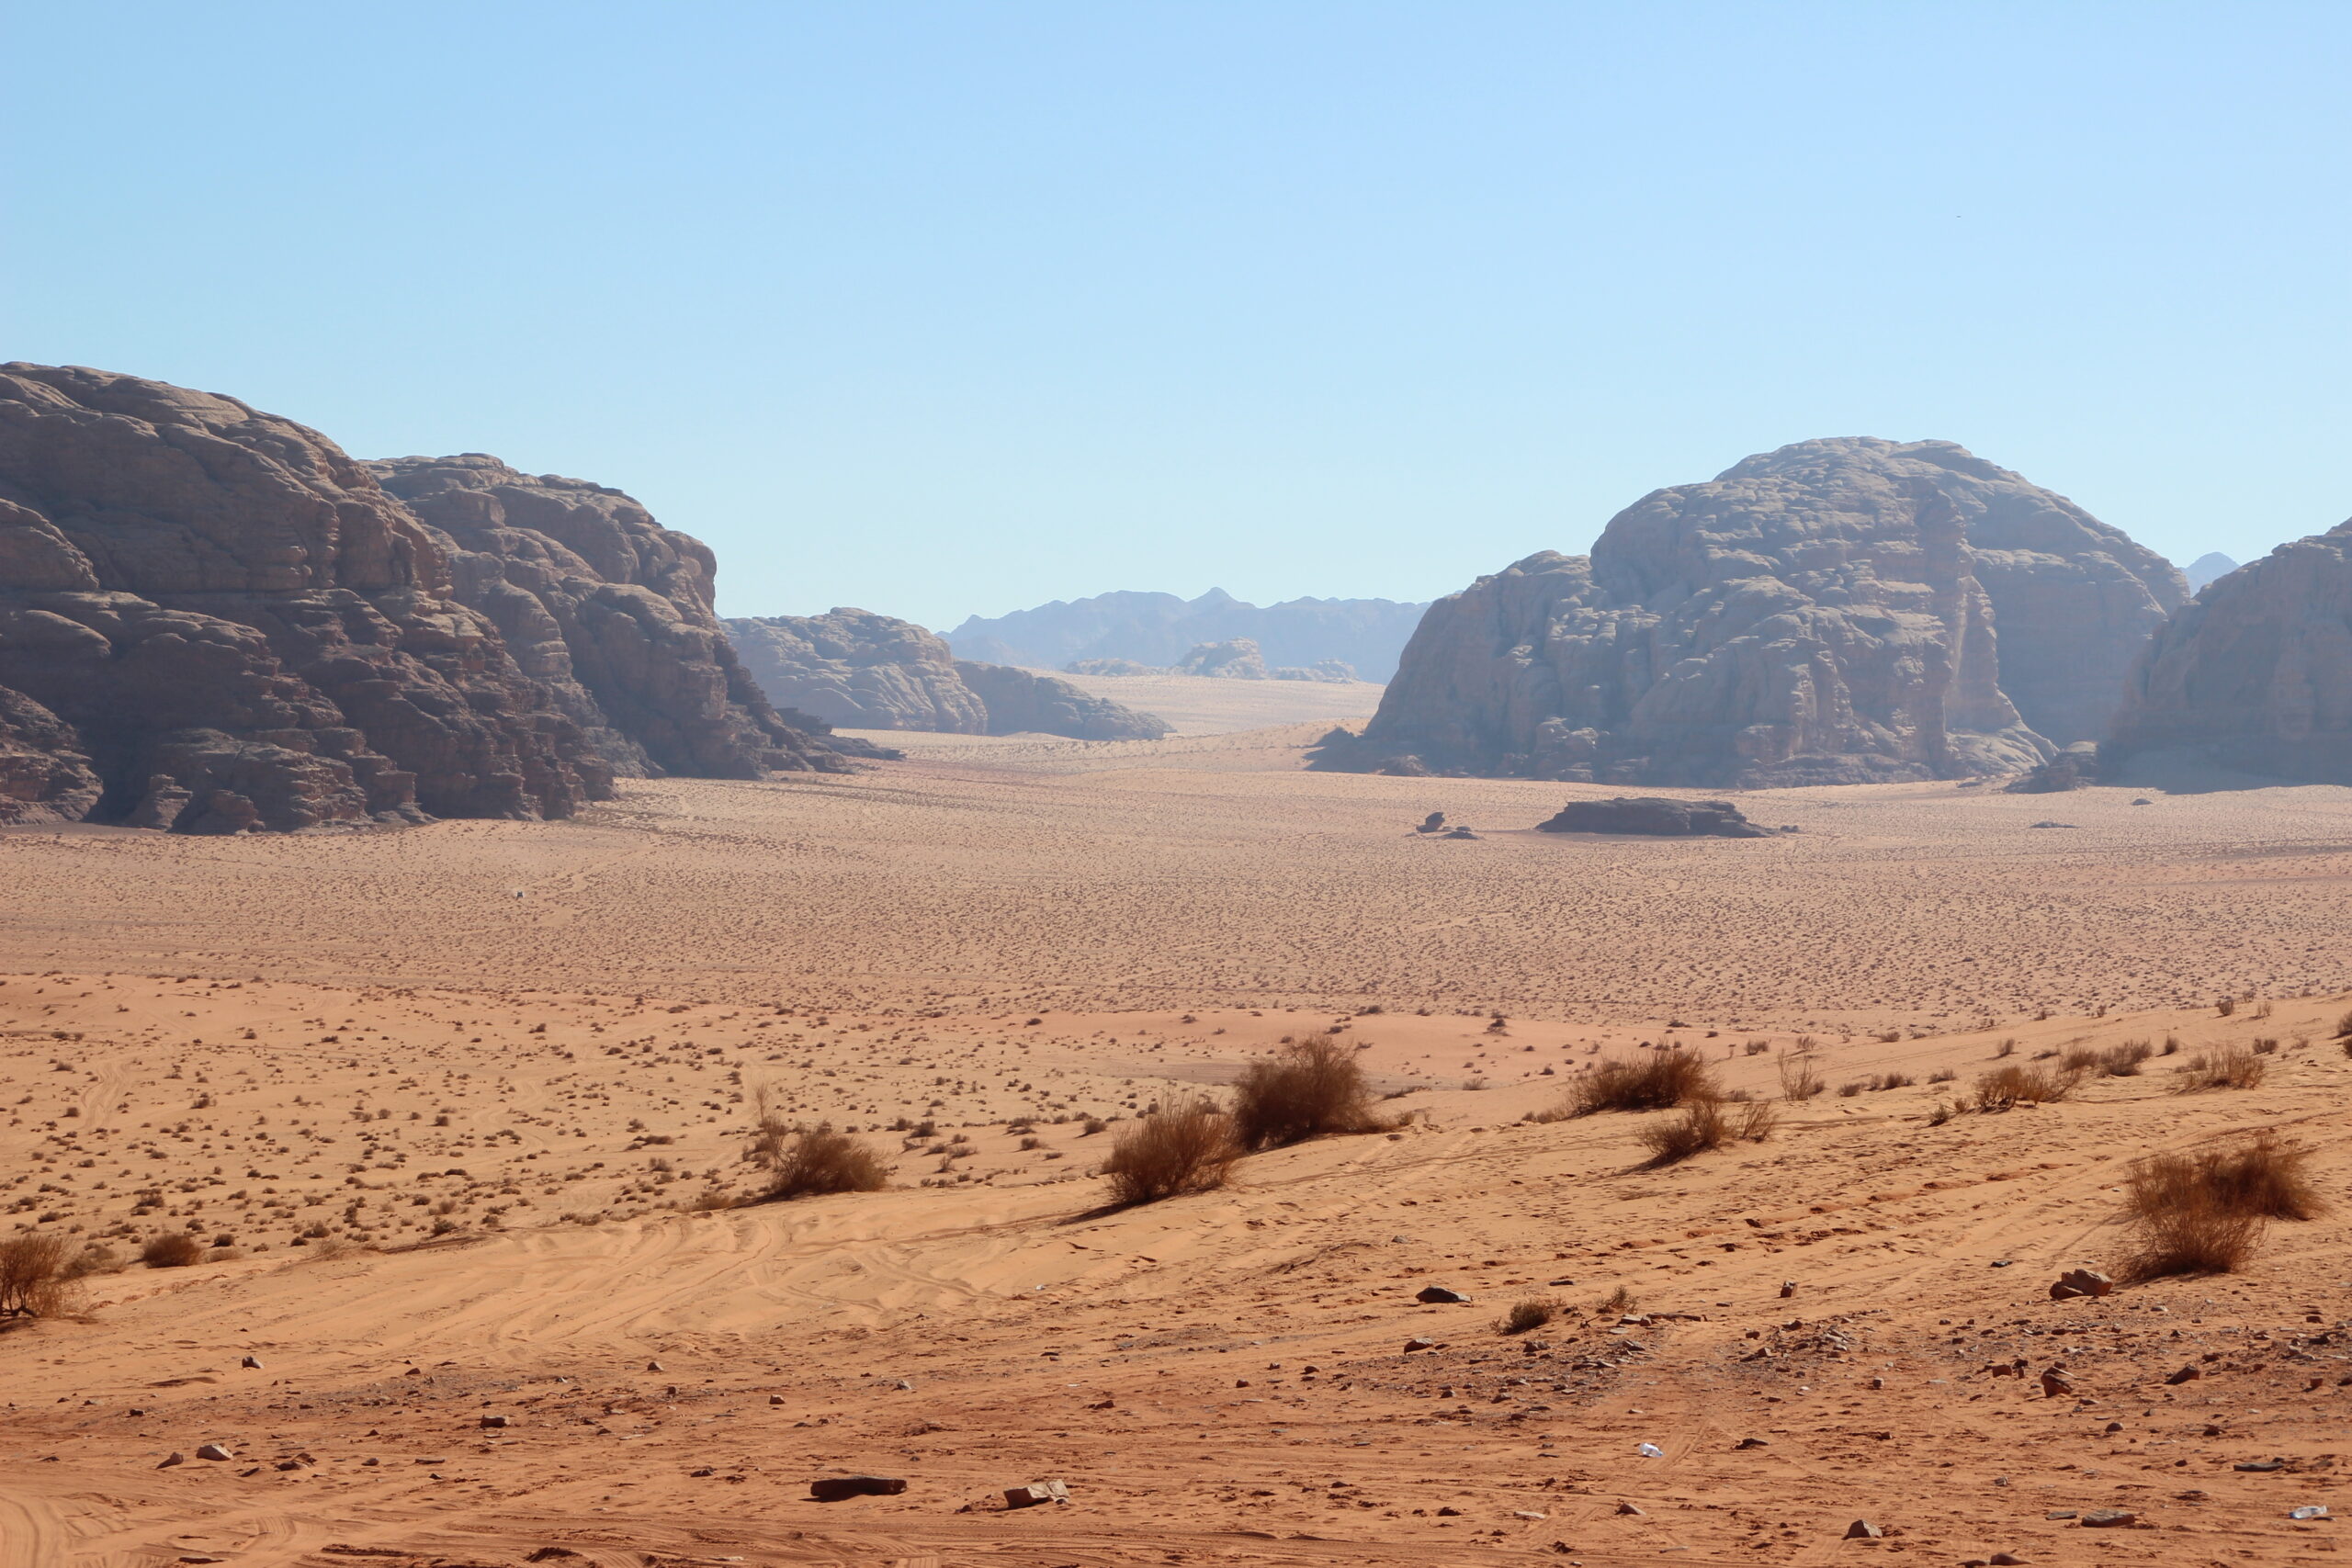 The immensity of the desert